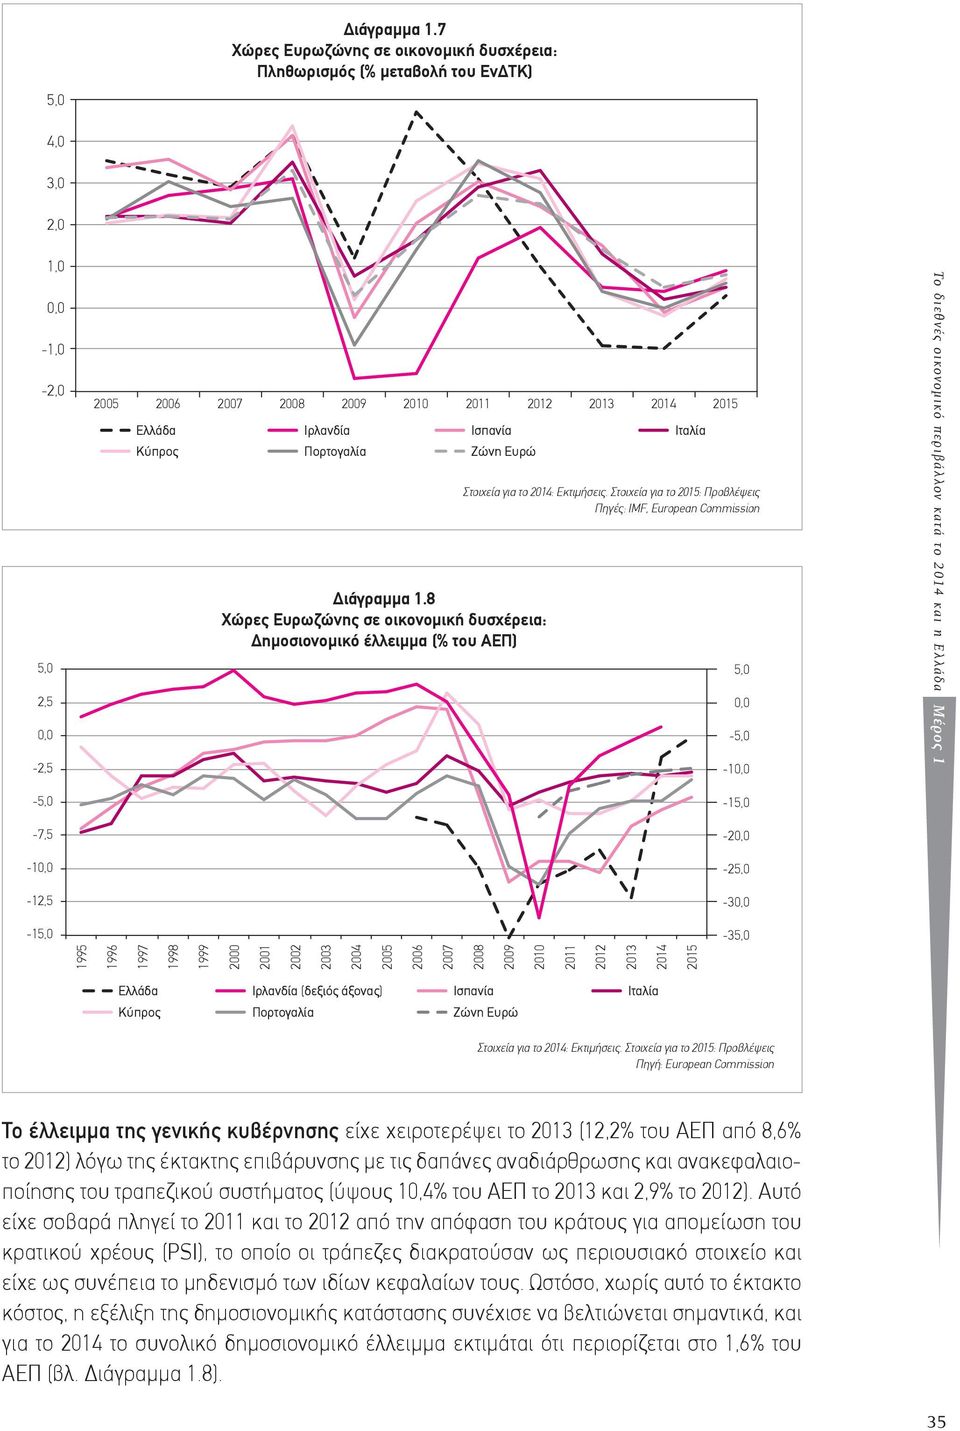 Πορτογαλία Ισπανία Ζώνη Ευρώ 8 Χώρες Ευρωζώνης σε οικονοµική δυσχέρεια: Δηµοσιονοµικό έλλειµµα (% του ΑΕΠ) Ιταλία Πηγές: IMF, European Commission 5,0 0,0-5,0-10,0 Το διεθνές οικονομικό περιβάλλον